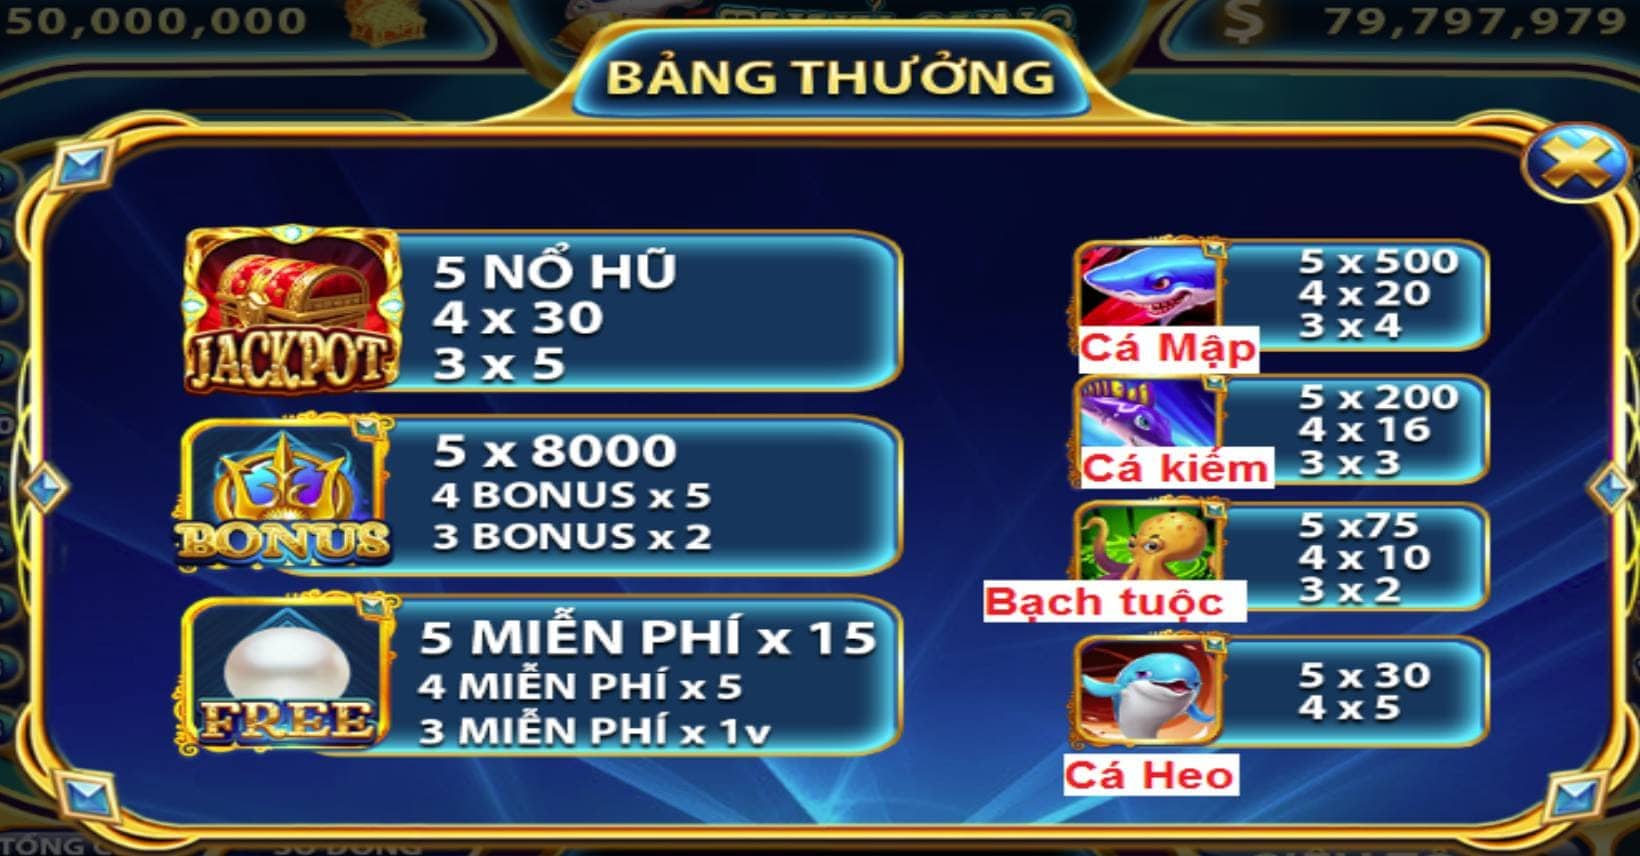 Giai ma game no hu Thuy Cung Sunwin an hu 97 000 000